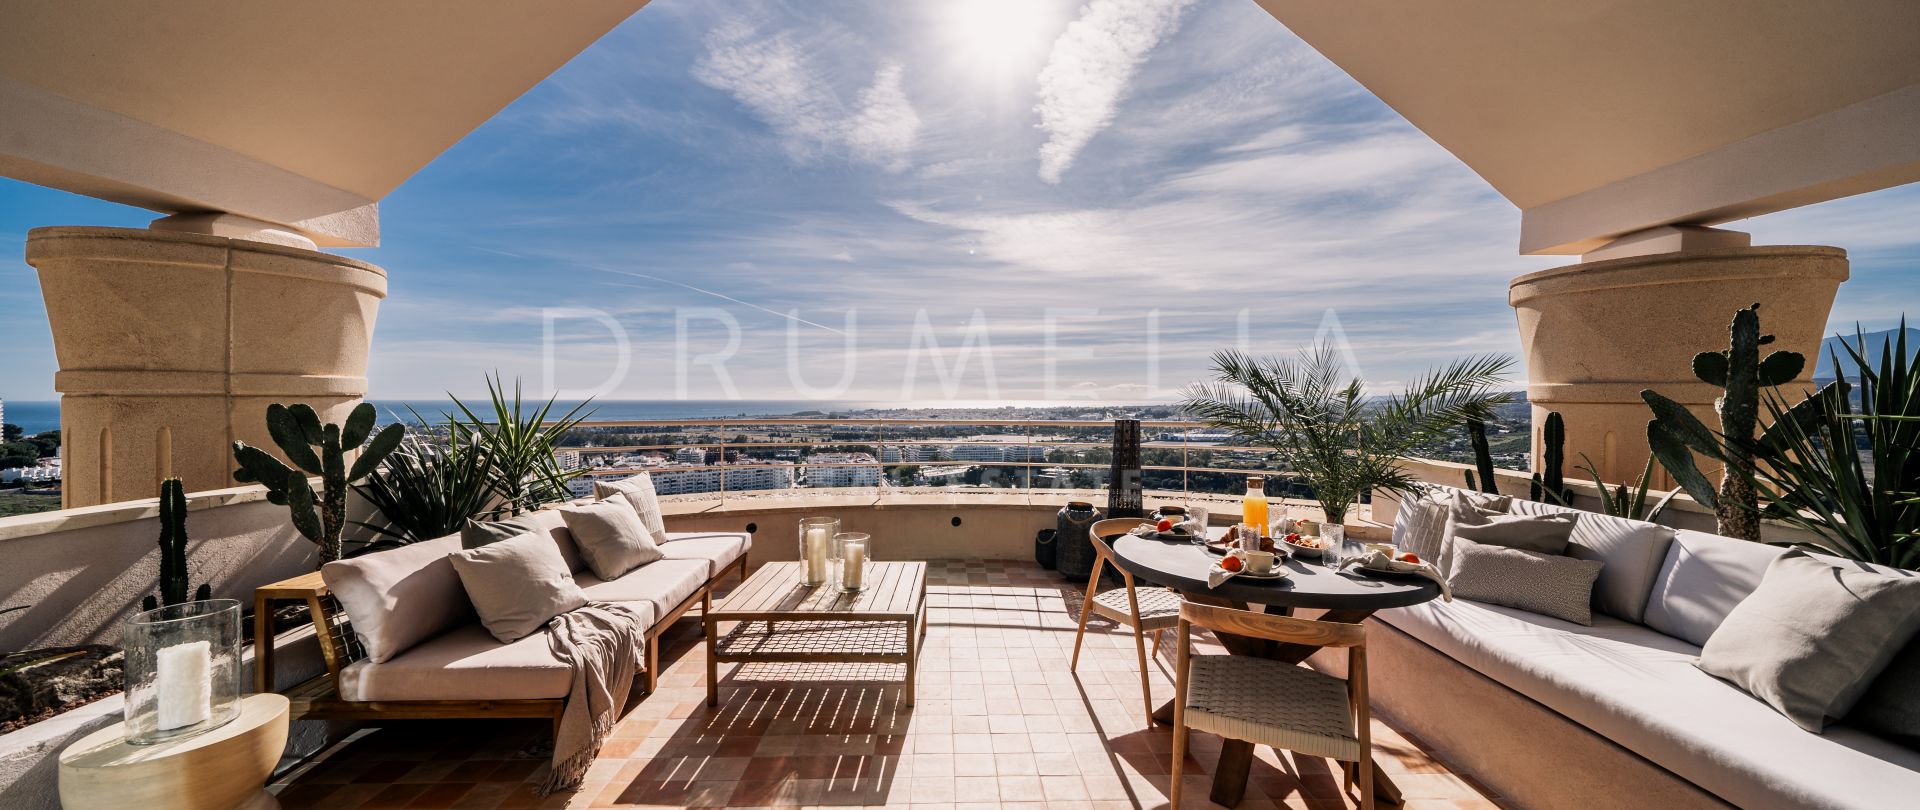 Stijlvol gerenoveerd luxe penthouse duplex met prachtig panoramisch uitzicht in Nueva Andalucia, Marbella